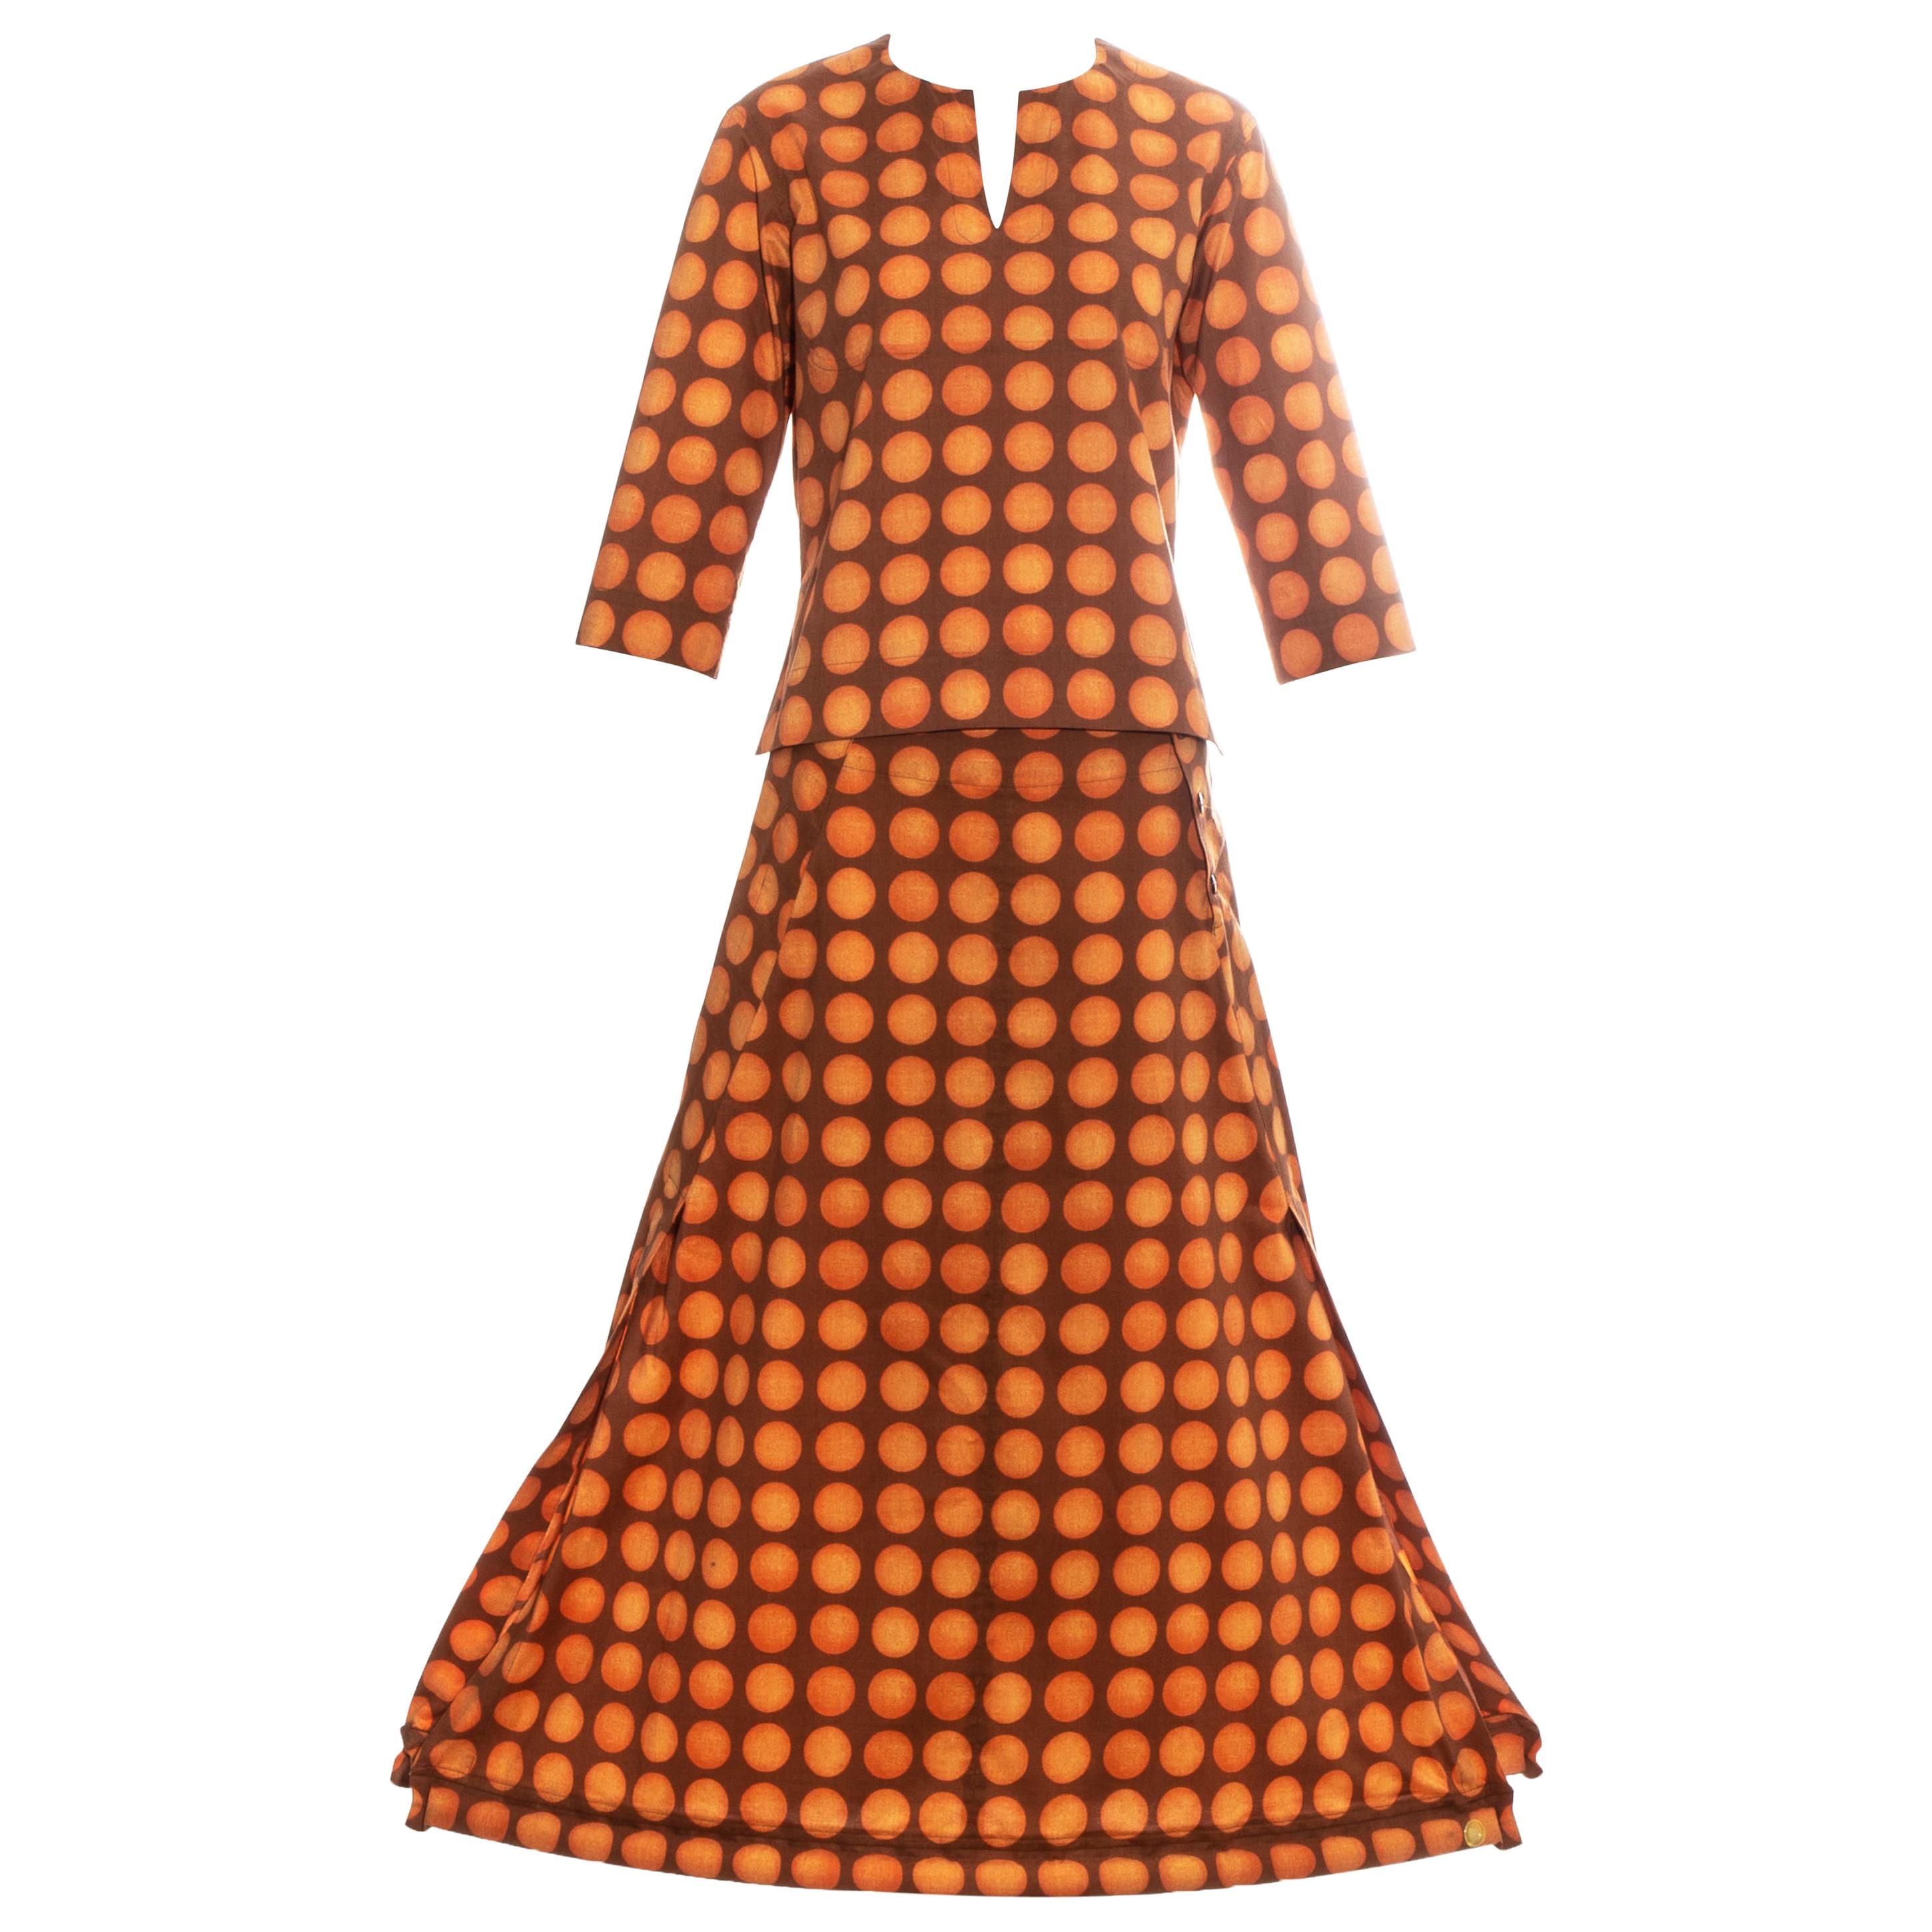 Issey Miyake orange polkadot printed cotton skirt suit, ss 2001